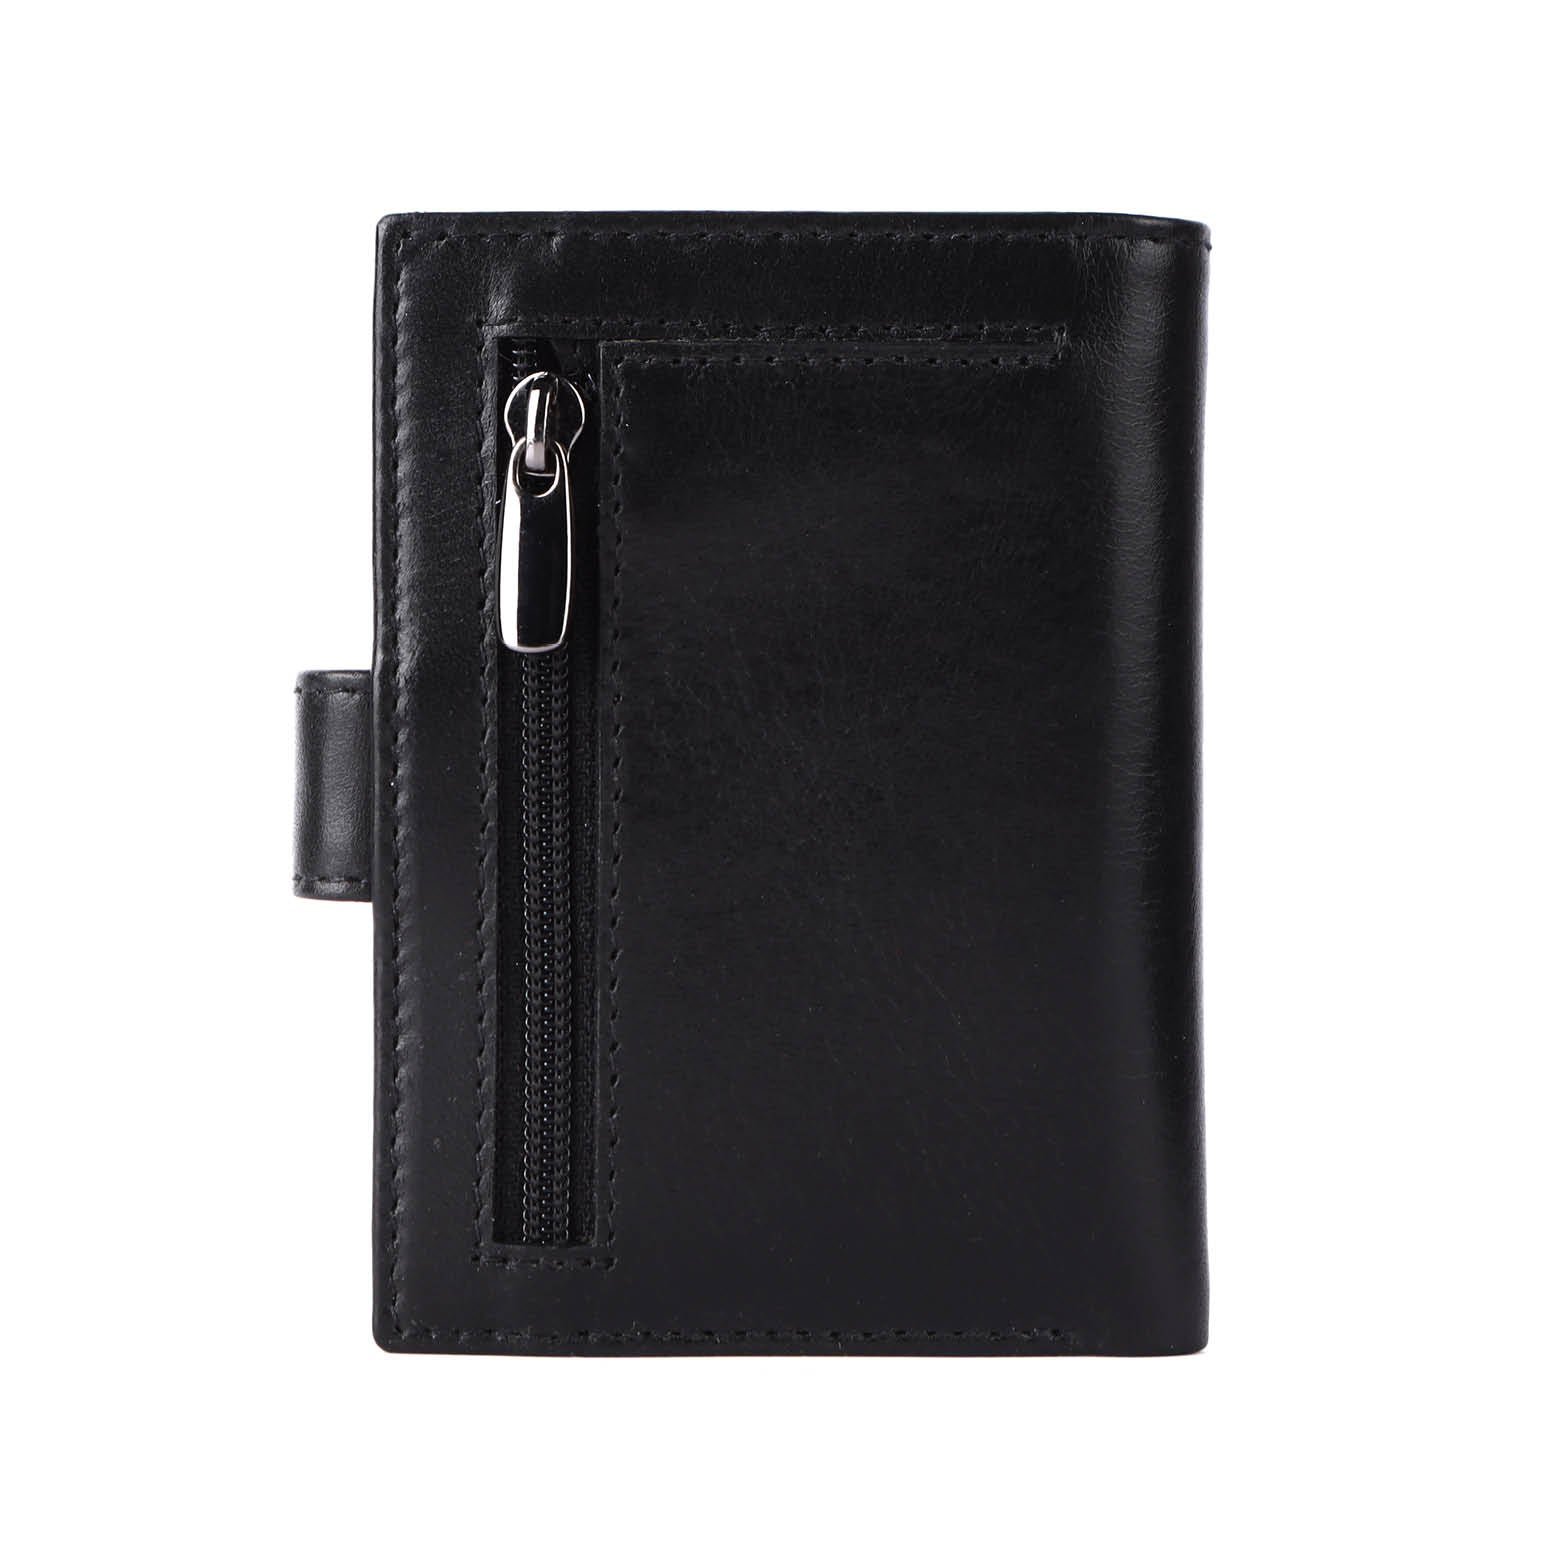 Zwarte leren luxe portemonnee geschikt voor kaarten, contant geld en munten met MagSafe voor pasjeshouder Cardprotector Aluminium